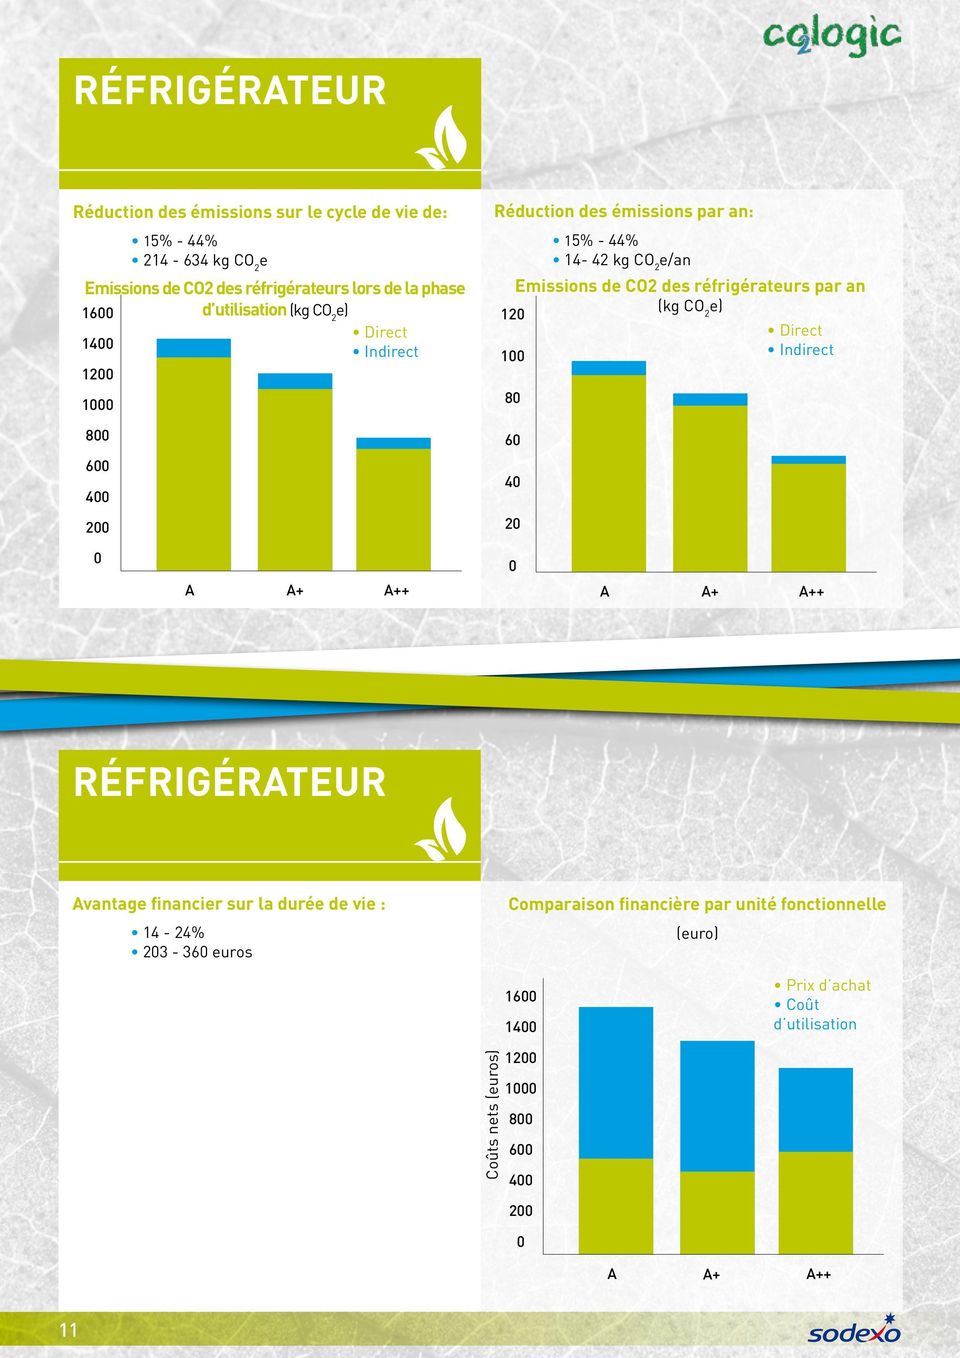 réfrigérateurs par an (kg CO 2 e) 12 1 8 6 4 2 A A+ A++ A A+ A++ Réfrigérateur Avantage financier sur la durée de vie : 14-24% 23-36